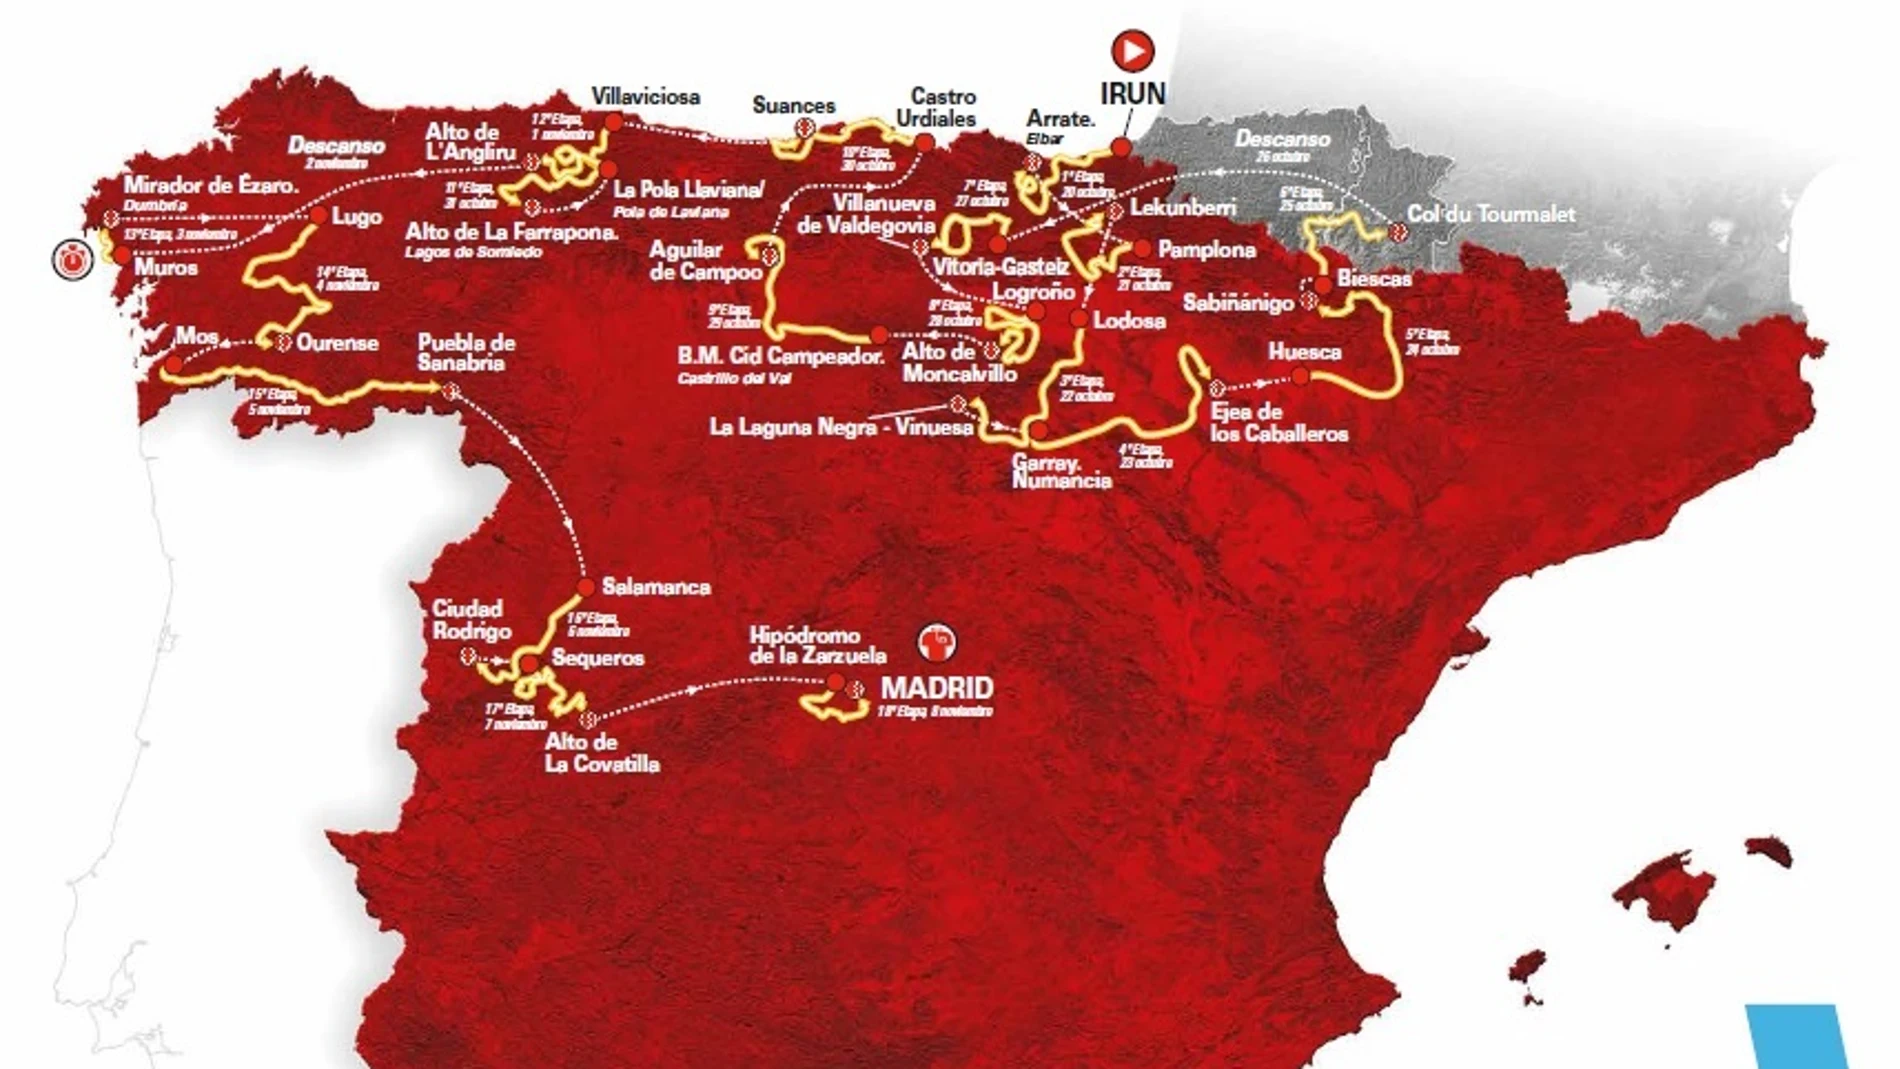 Ciclismo/Vuelta.- Puebla de Sanabria y Salamanca sustituyen al paso de La Vuelta 2020 por Portugal